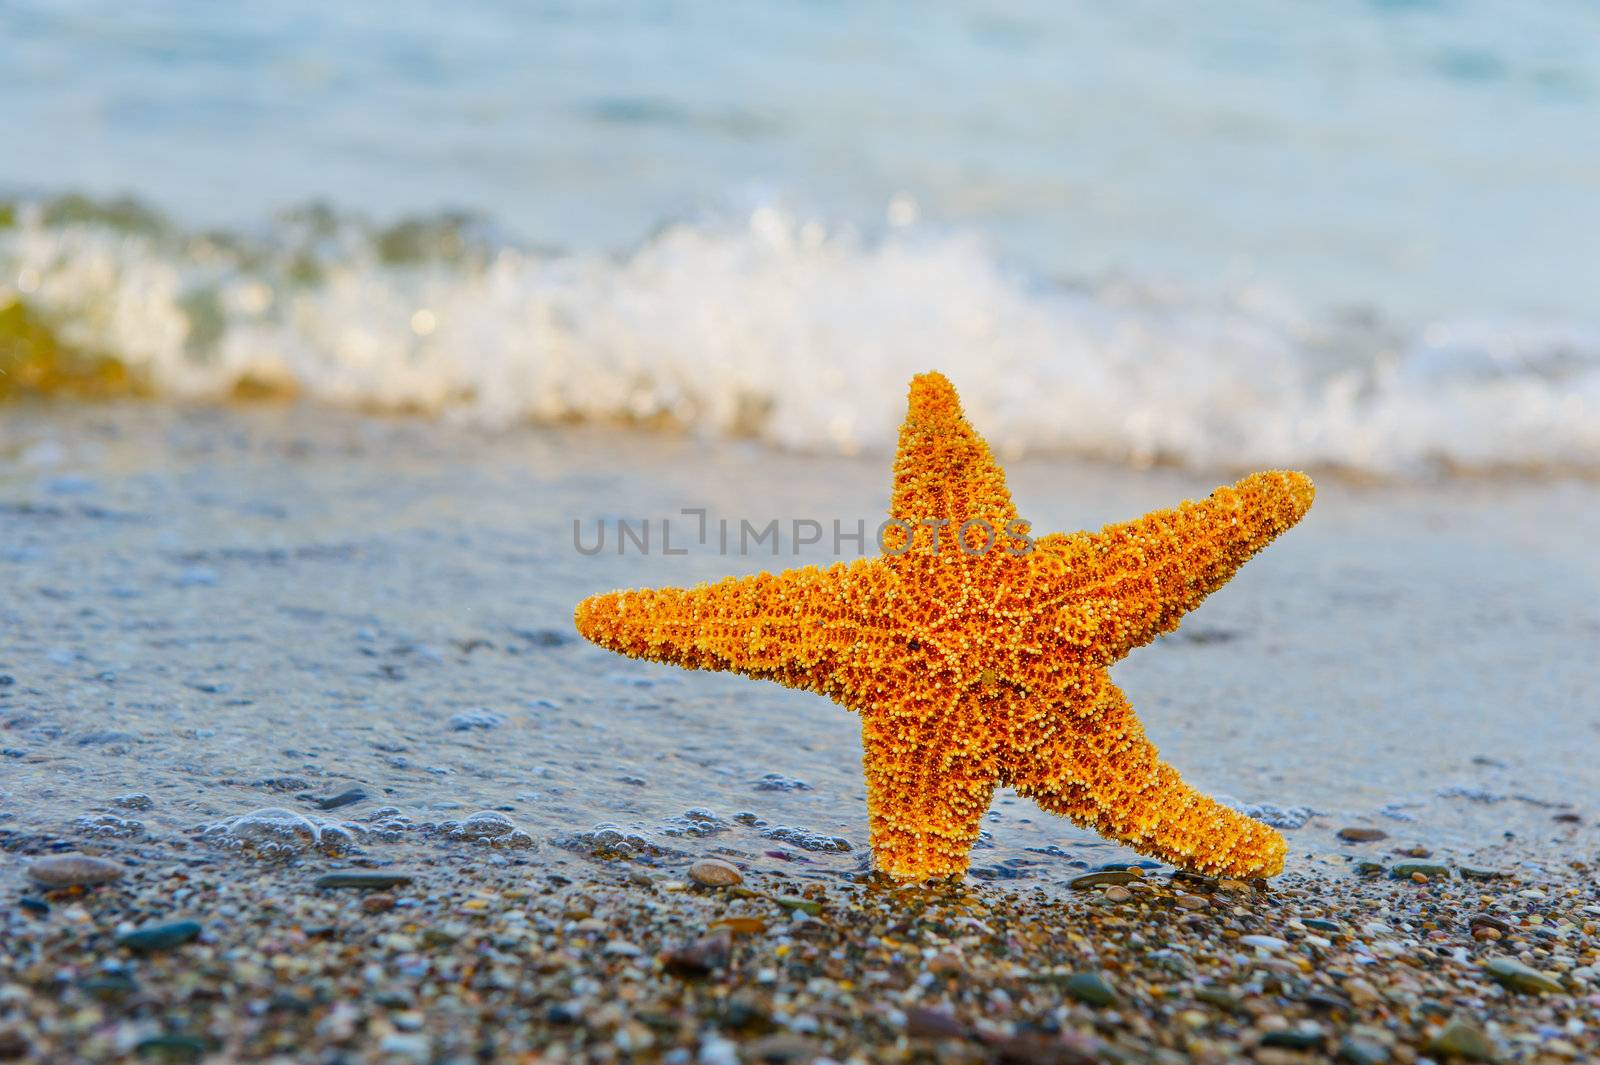 Starfish ashore by galdzer